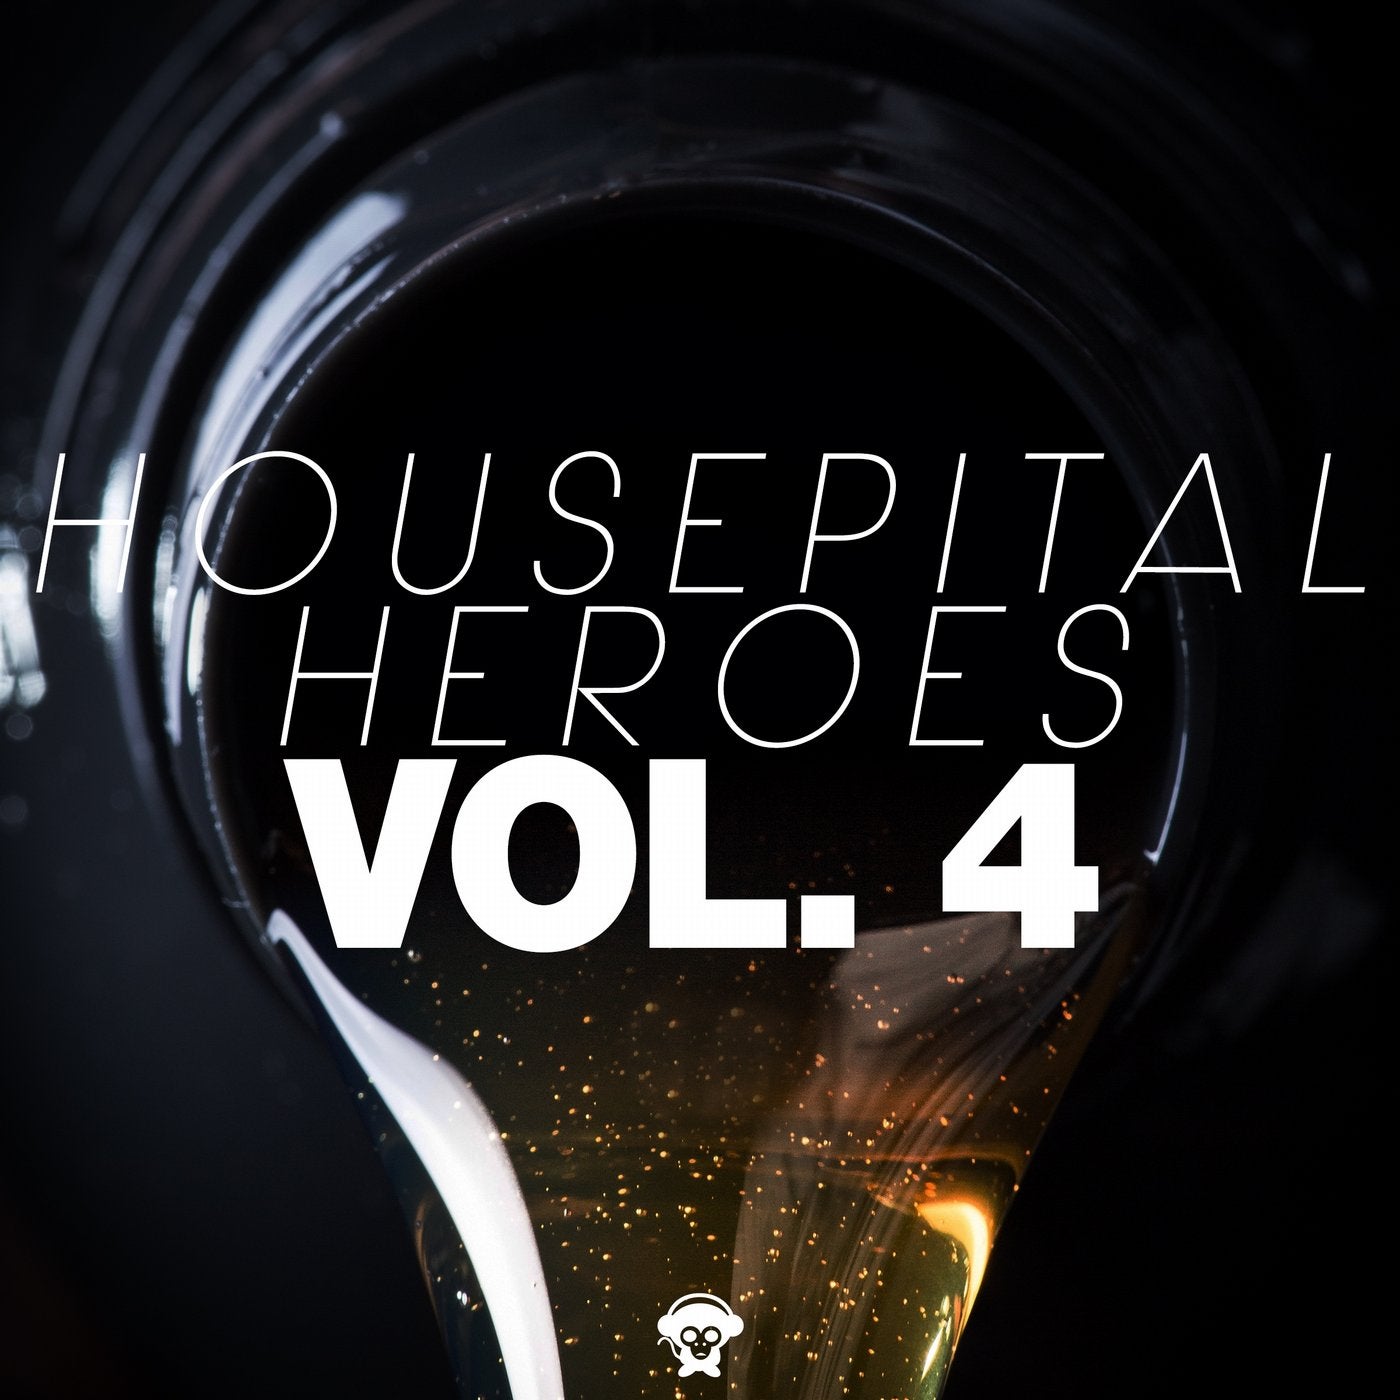 Housepital Heroes, Vol. 4